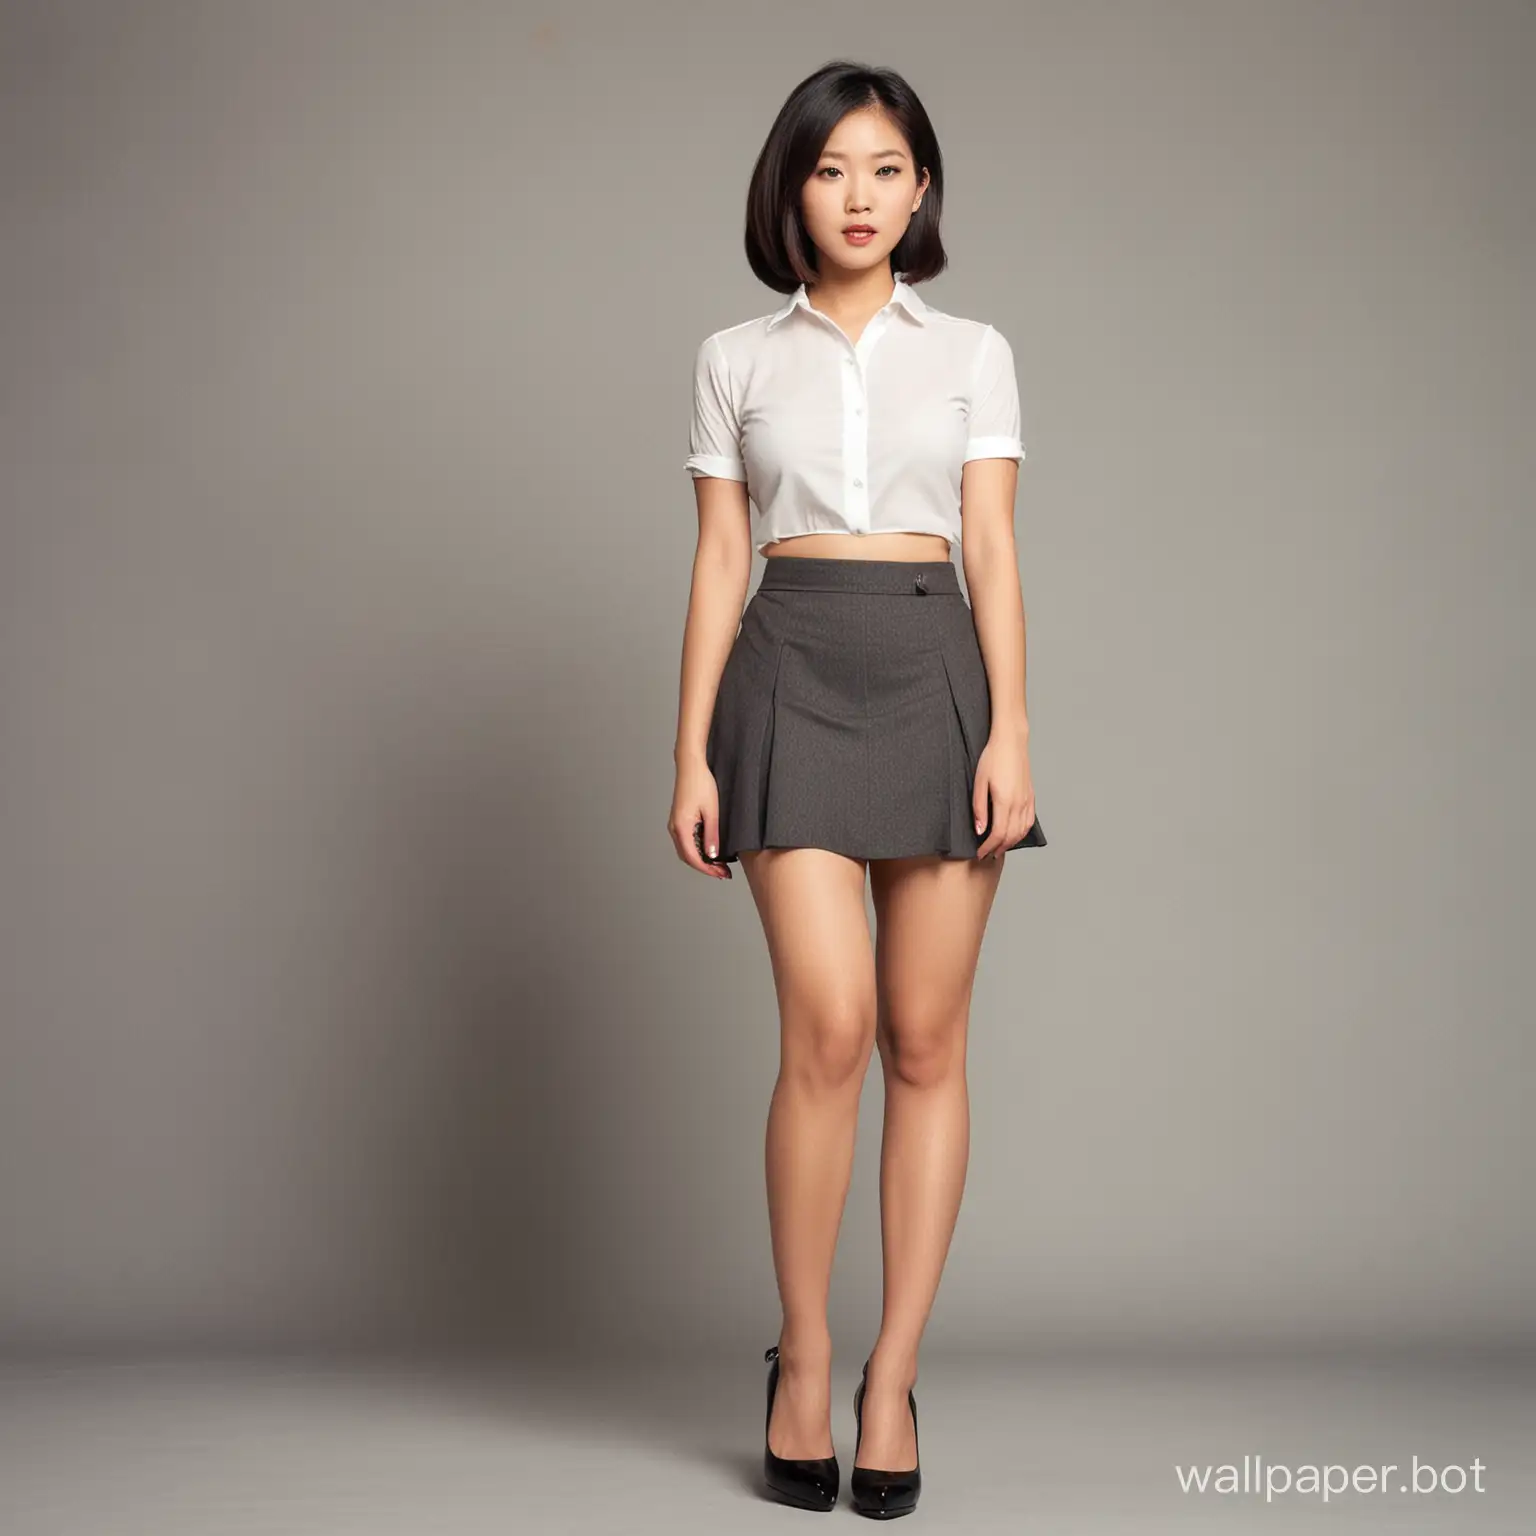 Vintage style. Asian female standing full body. Mini skirt. High heels.